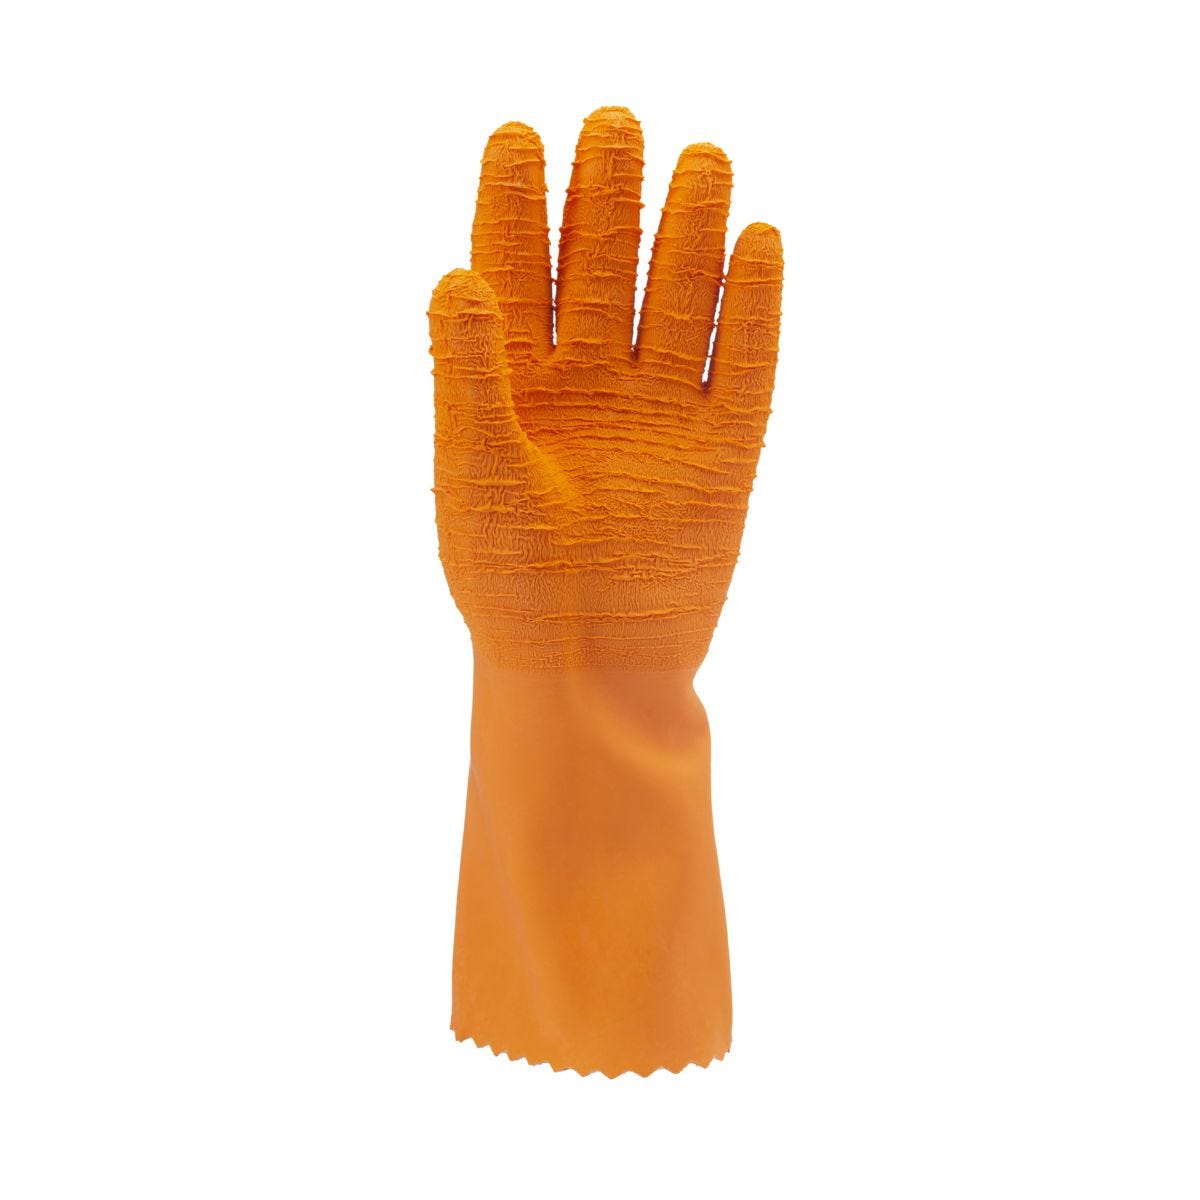 Gants latex crépé orange 34 cm qualité sup. - COVERGUARD - Taille XL-10 1